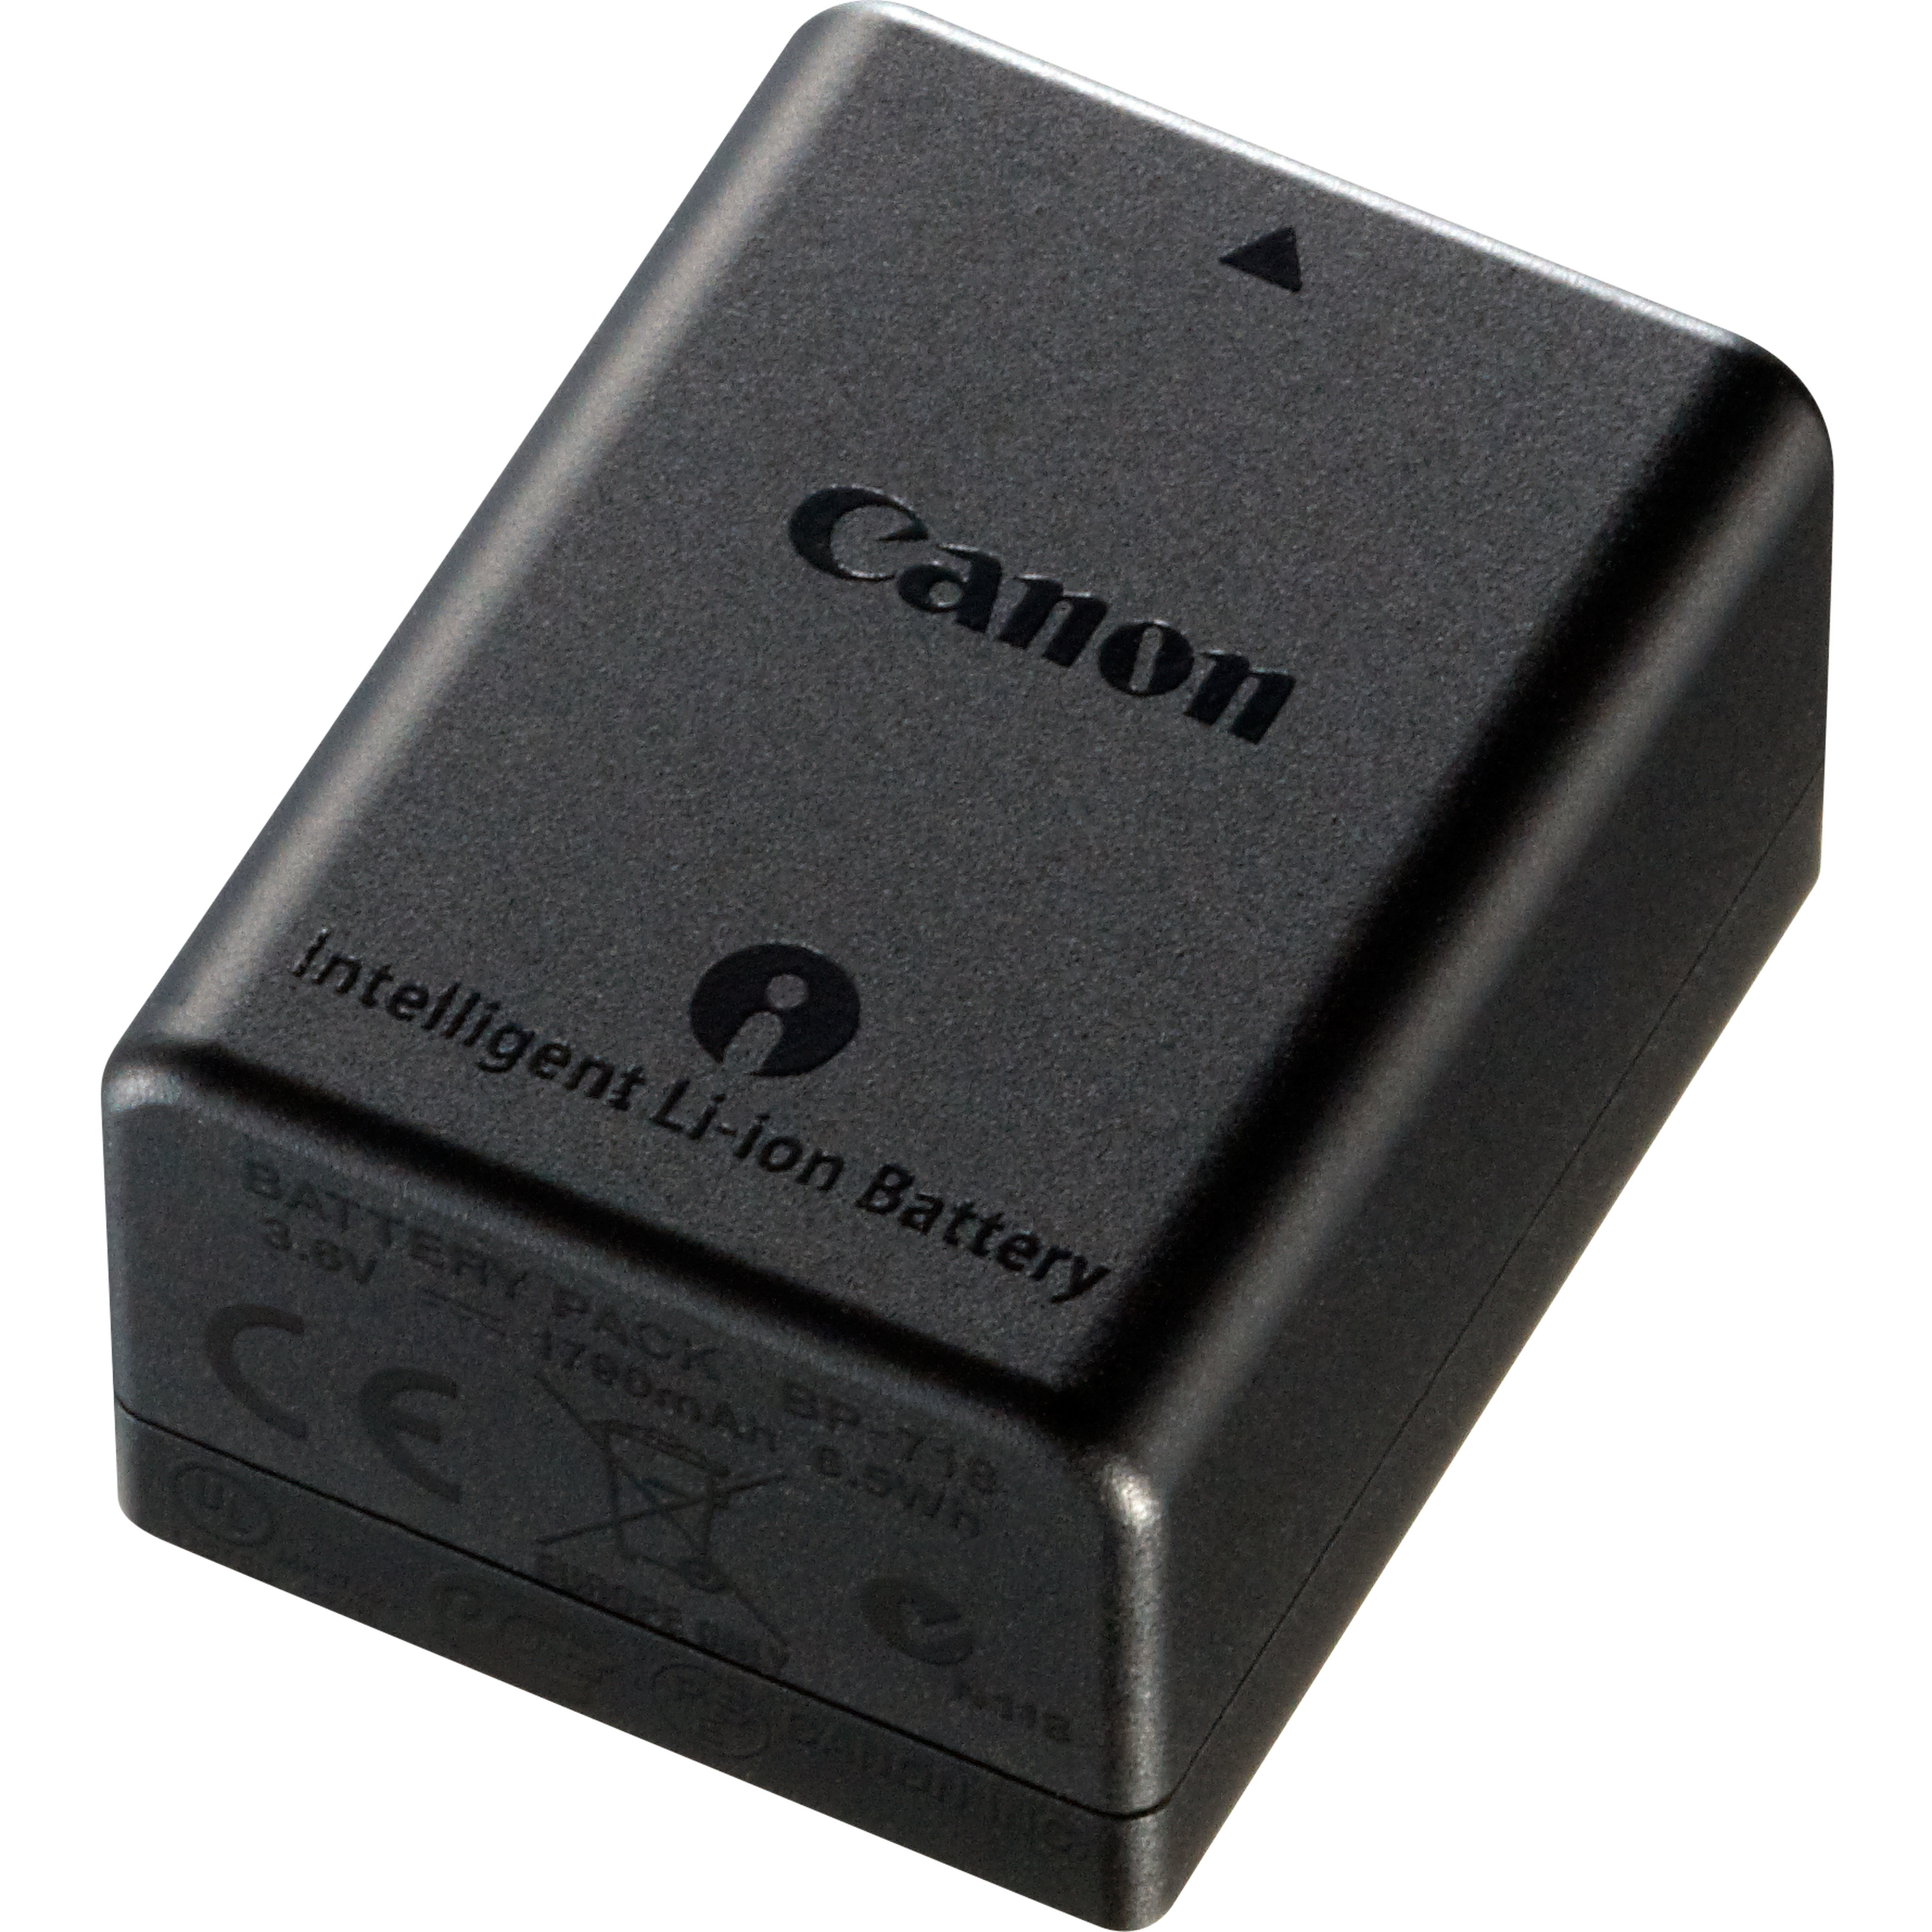 Canon Battery Pack BP-718 - Battery - Li-Ion - 1840 mAh - for LEGRIA HF R76, HF R77, HF R806, HF R86, HF R87, HF R88, VIXIA HF R80, HF R800, HF R82